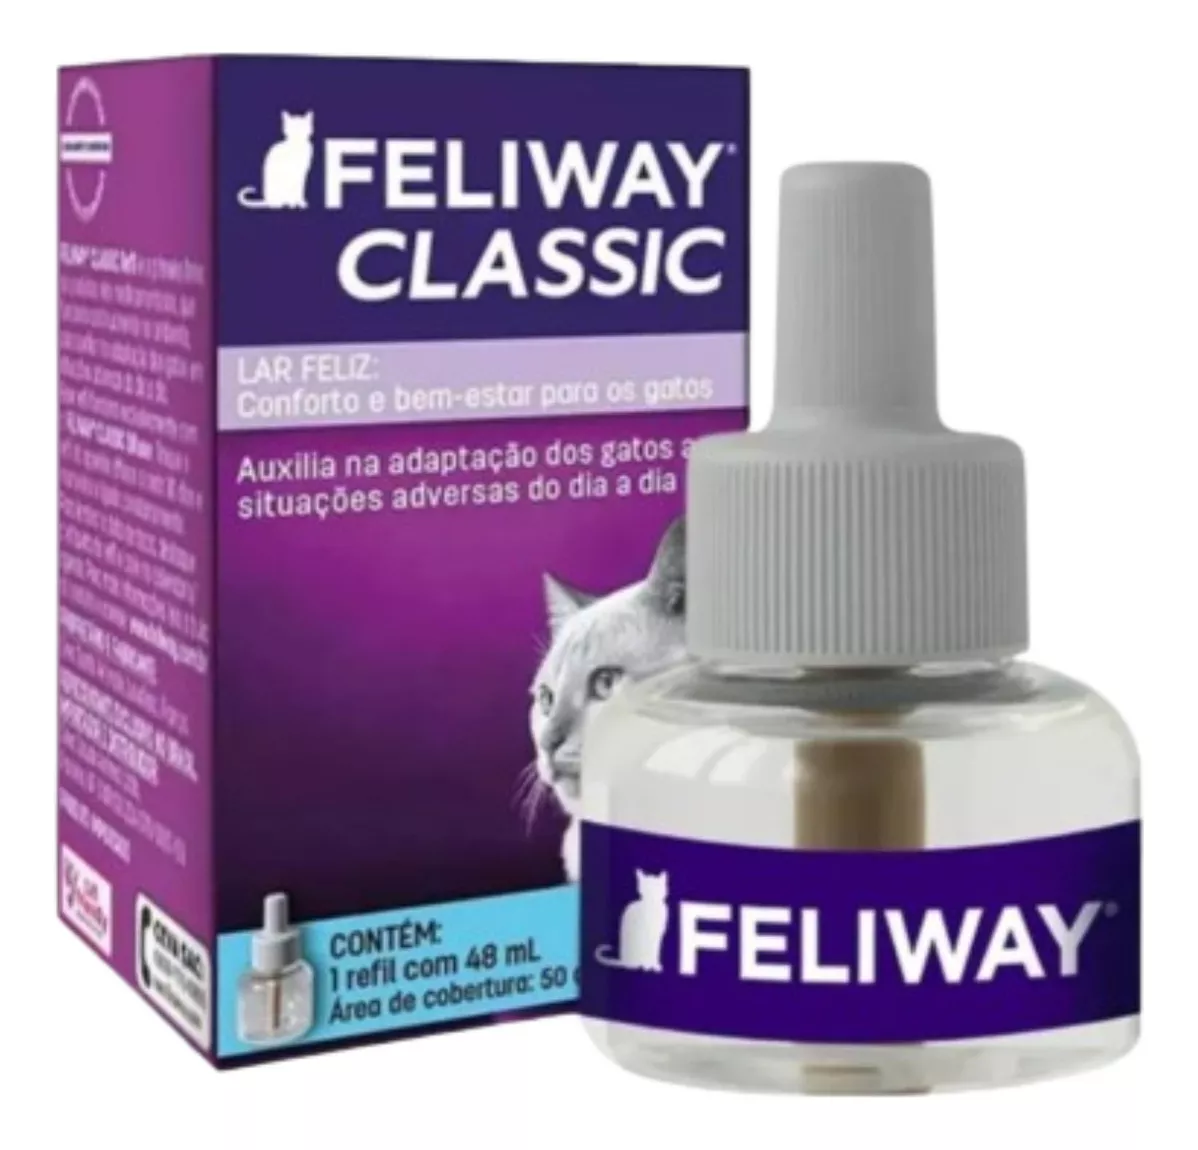 Primeira imagem para pesquisa de feliway spray